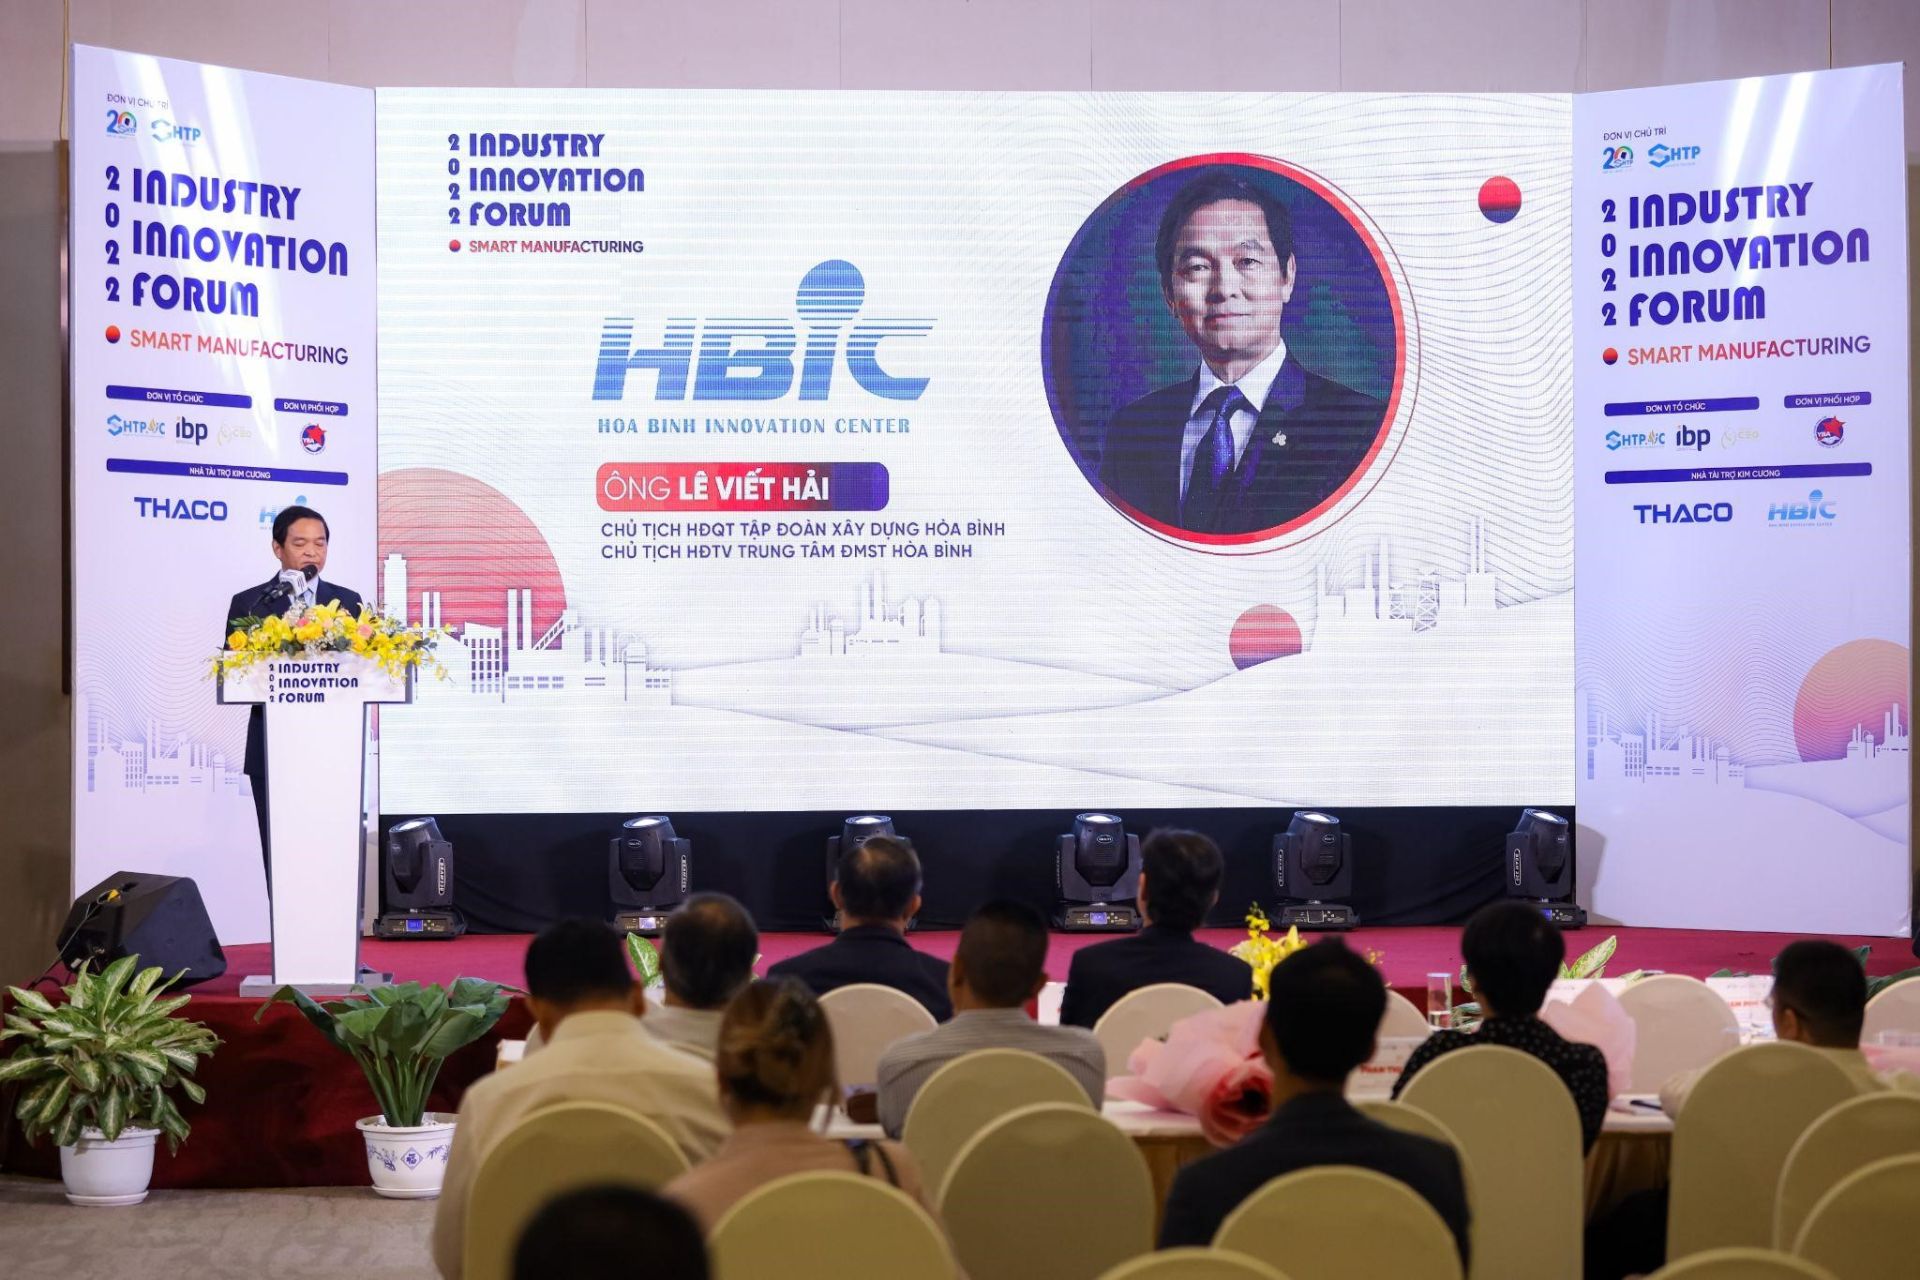 Ông Lê Viết Hải, Chủ tịch HĐQT Tập đoàn Xây dựng Hòa Bình, Chủ tịch HĐTV Trung tâm ĐMST Hòa Bình chia sẻ tại sự kiện